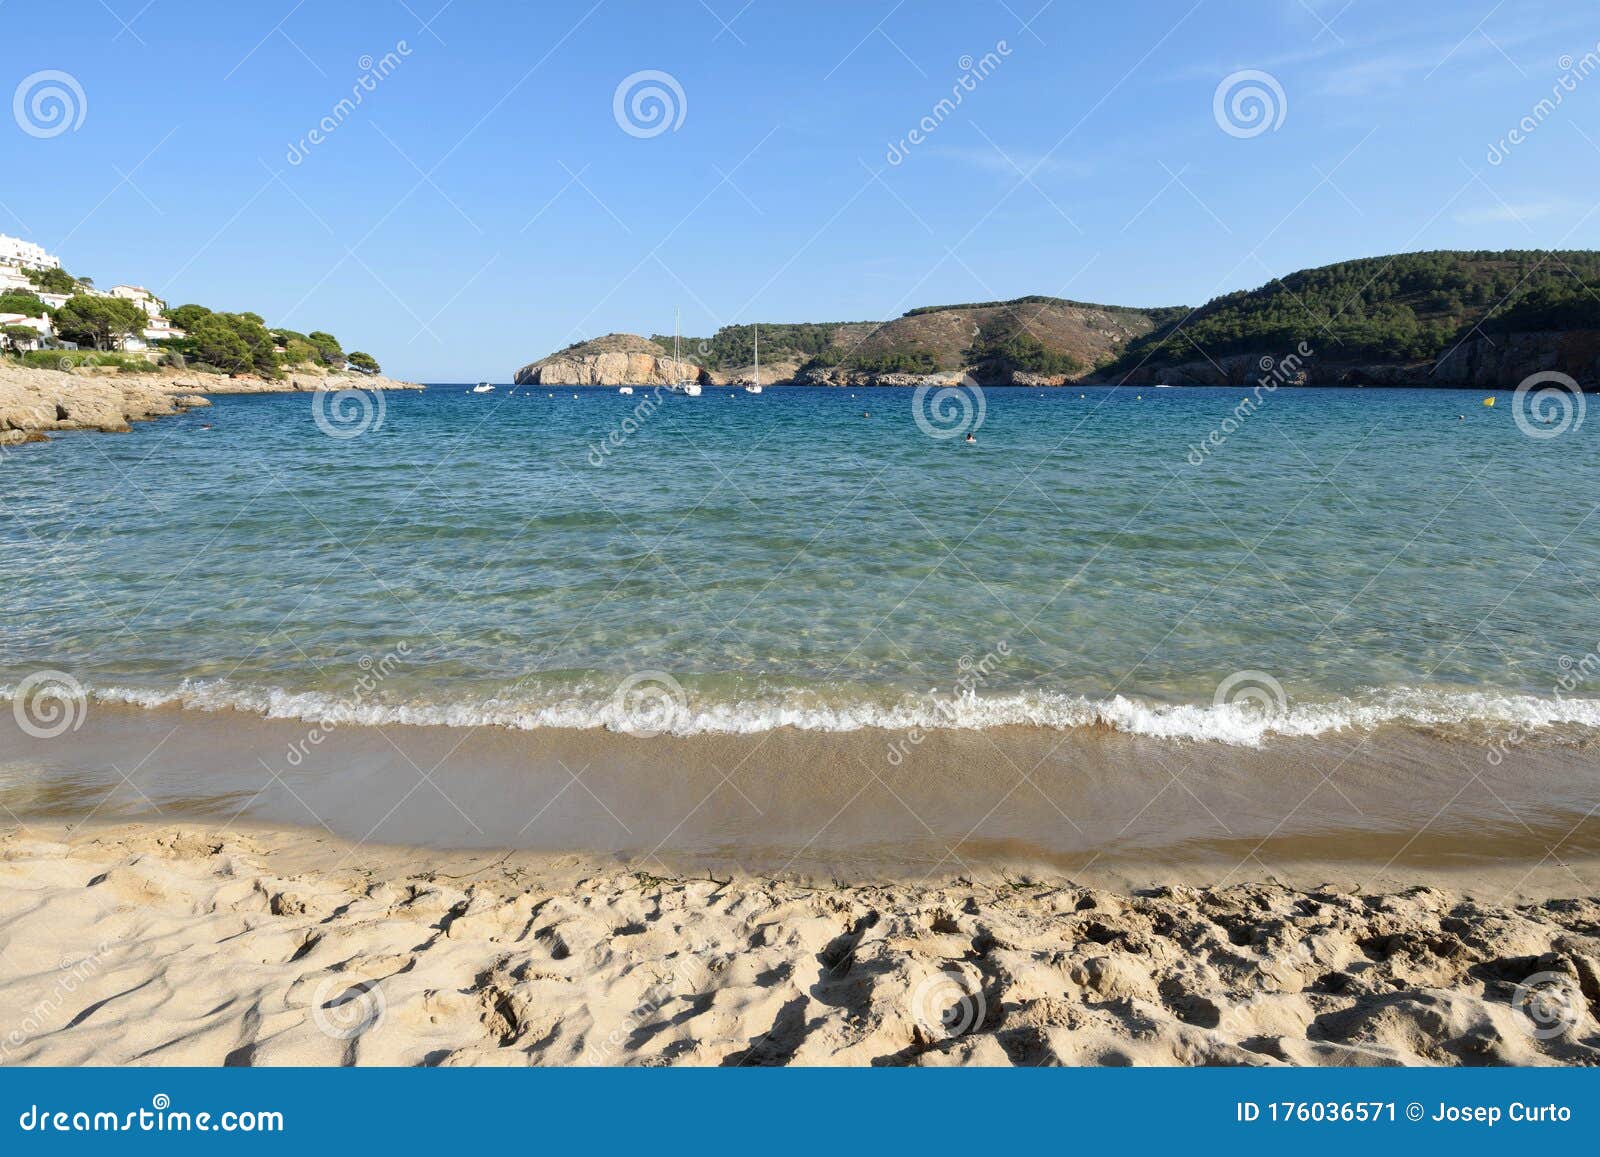 montgo beach of  la escala and torroella de montgri, costa brava, girona province, catalonia, spain